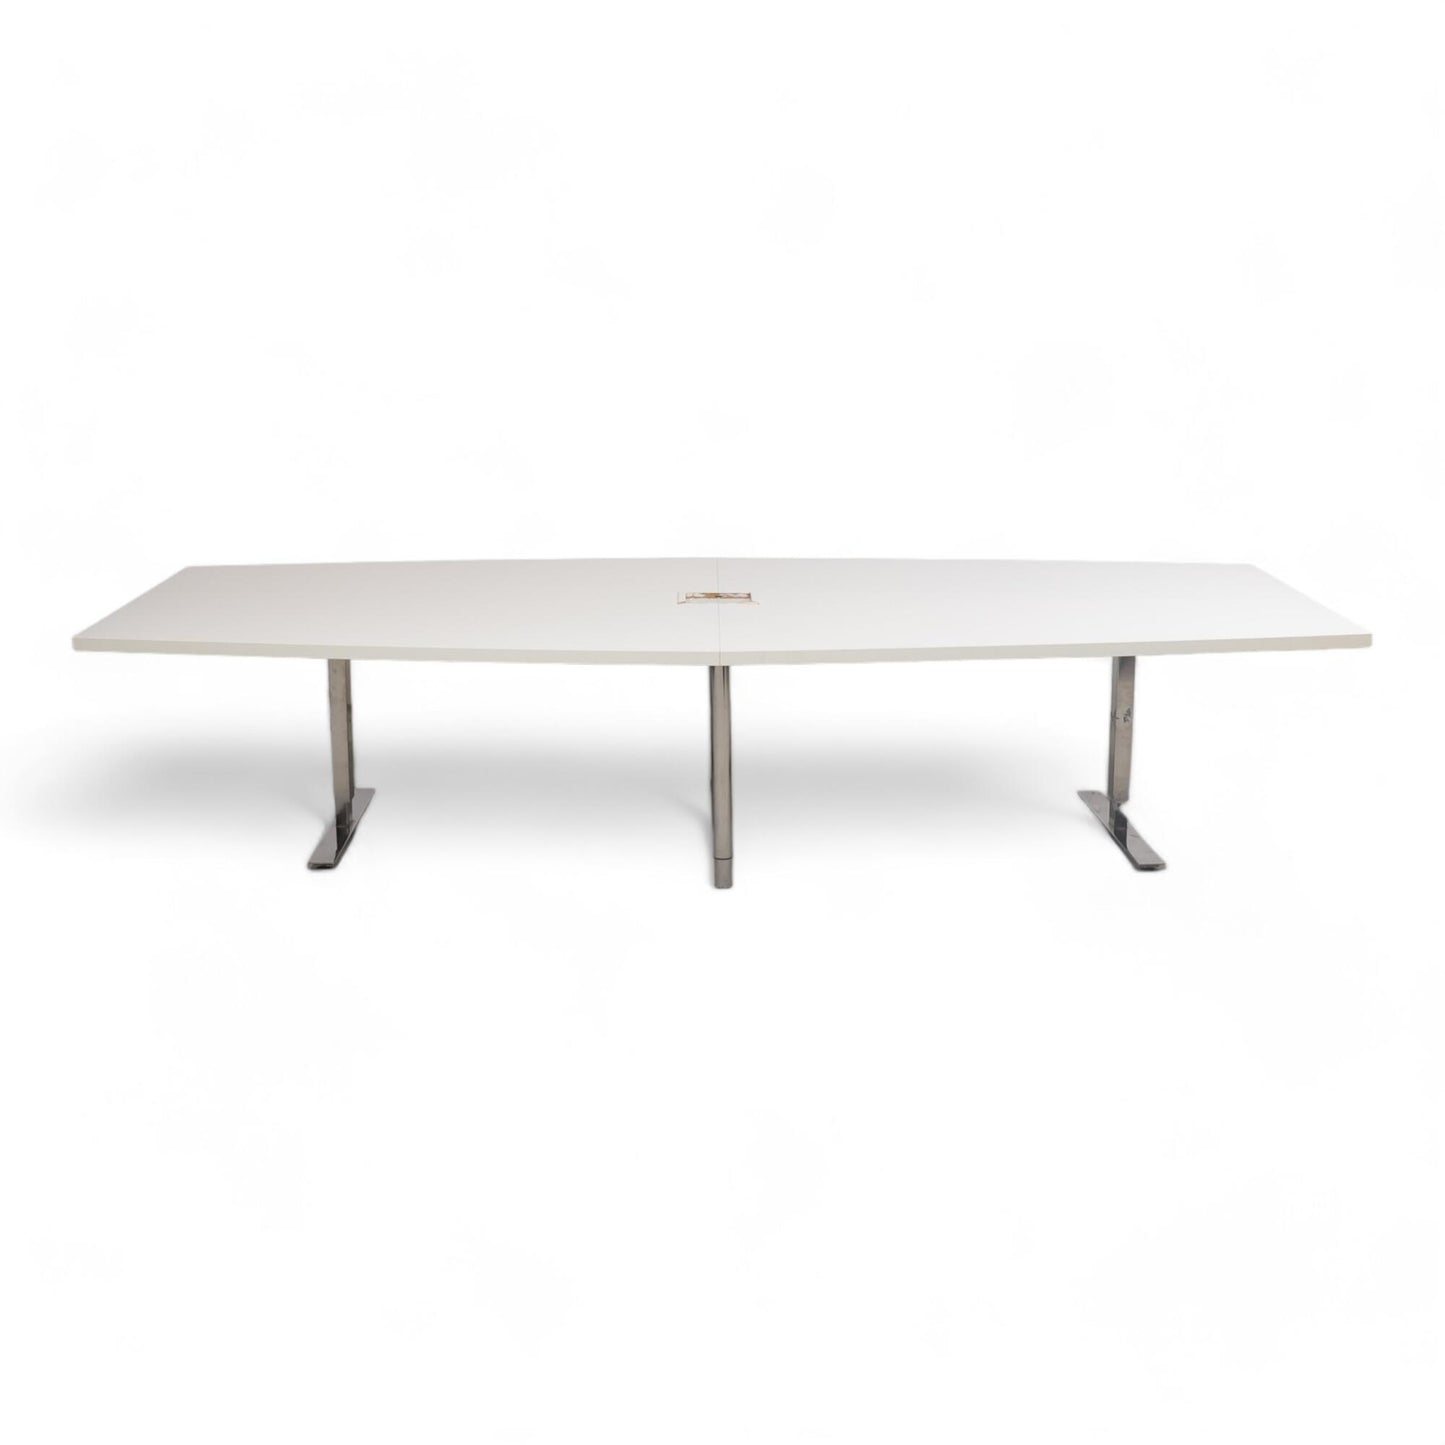 Kvalitetsikret | Hvitt møtebord fra IKEA, 340x145 cm